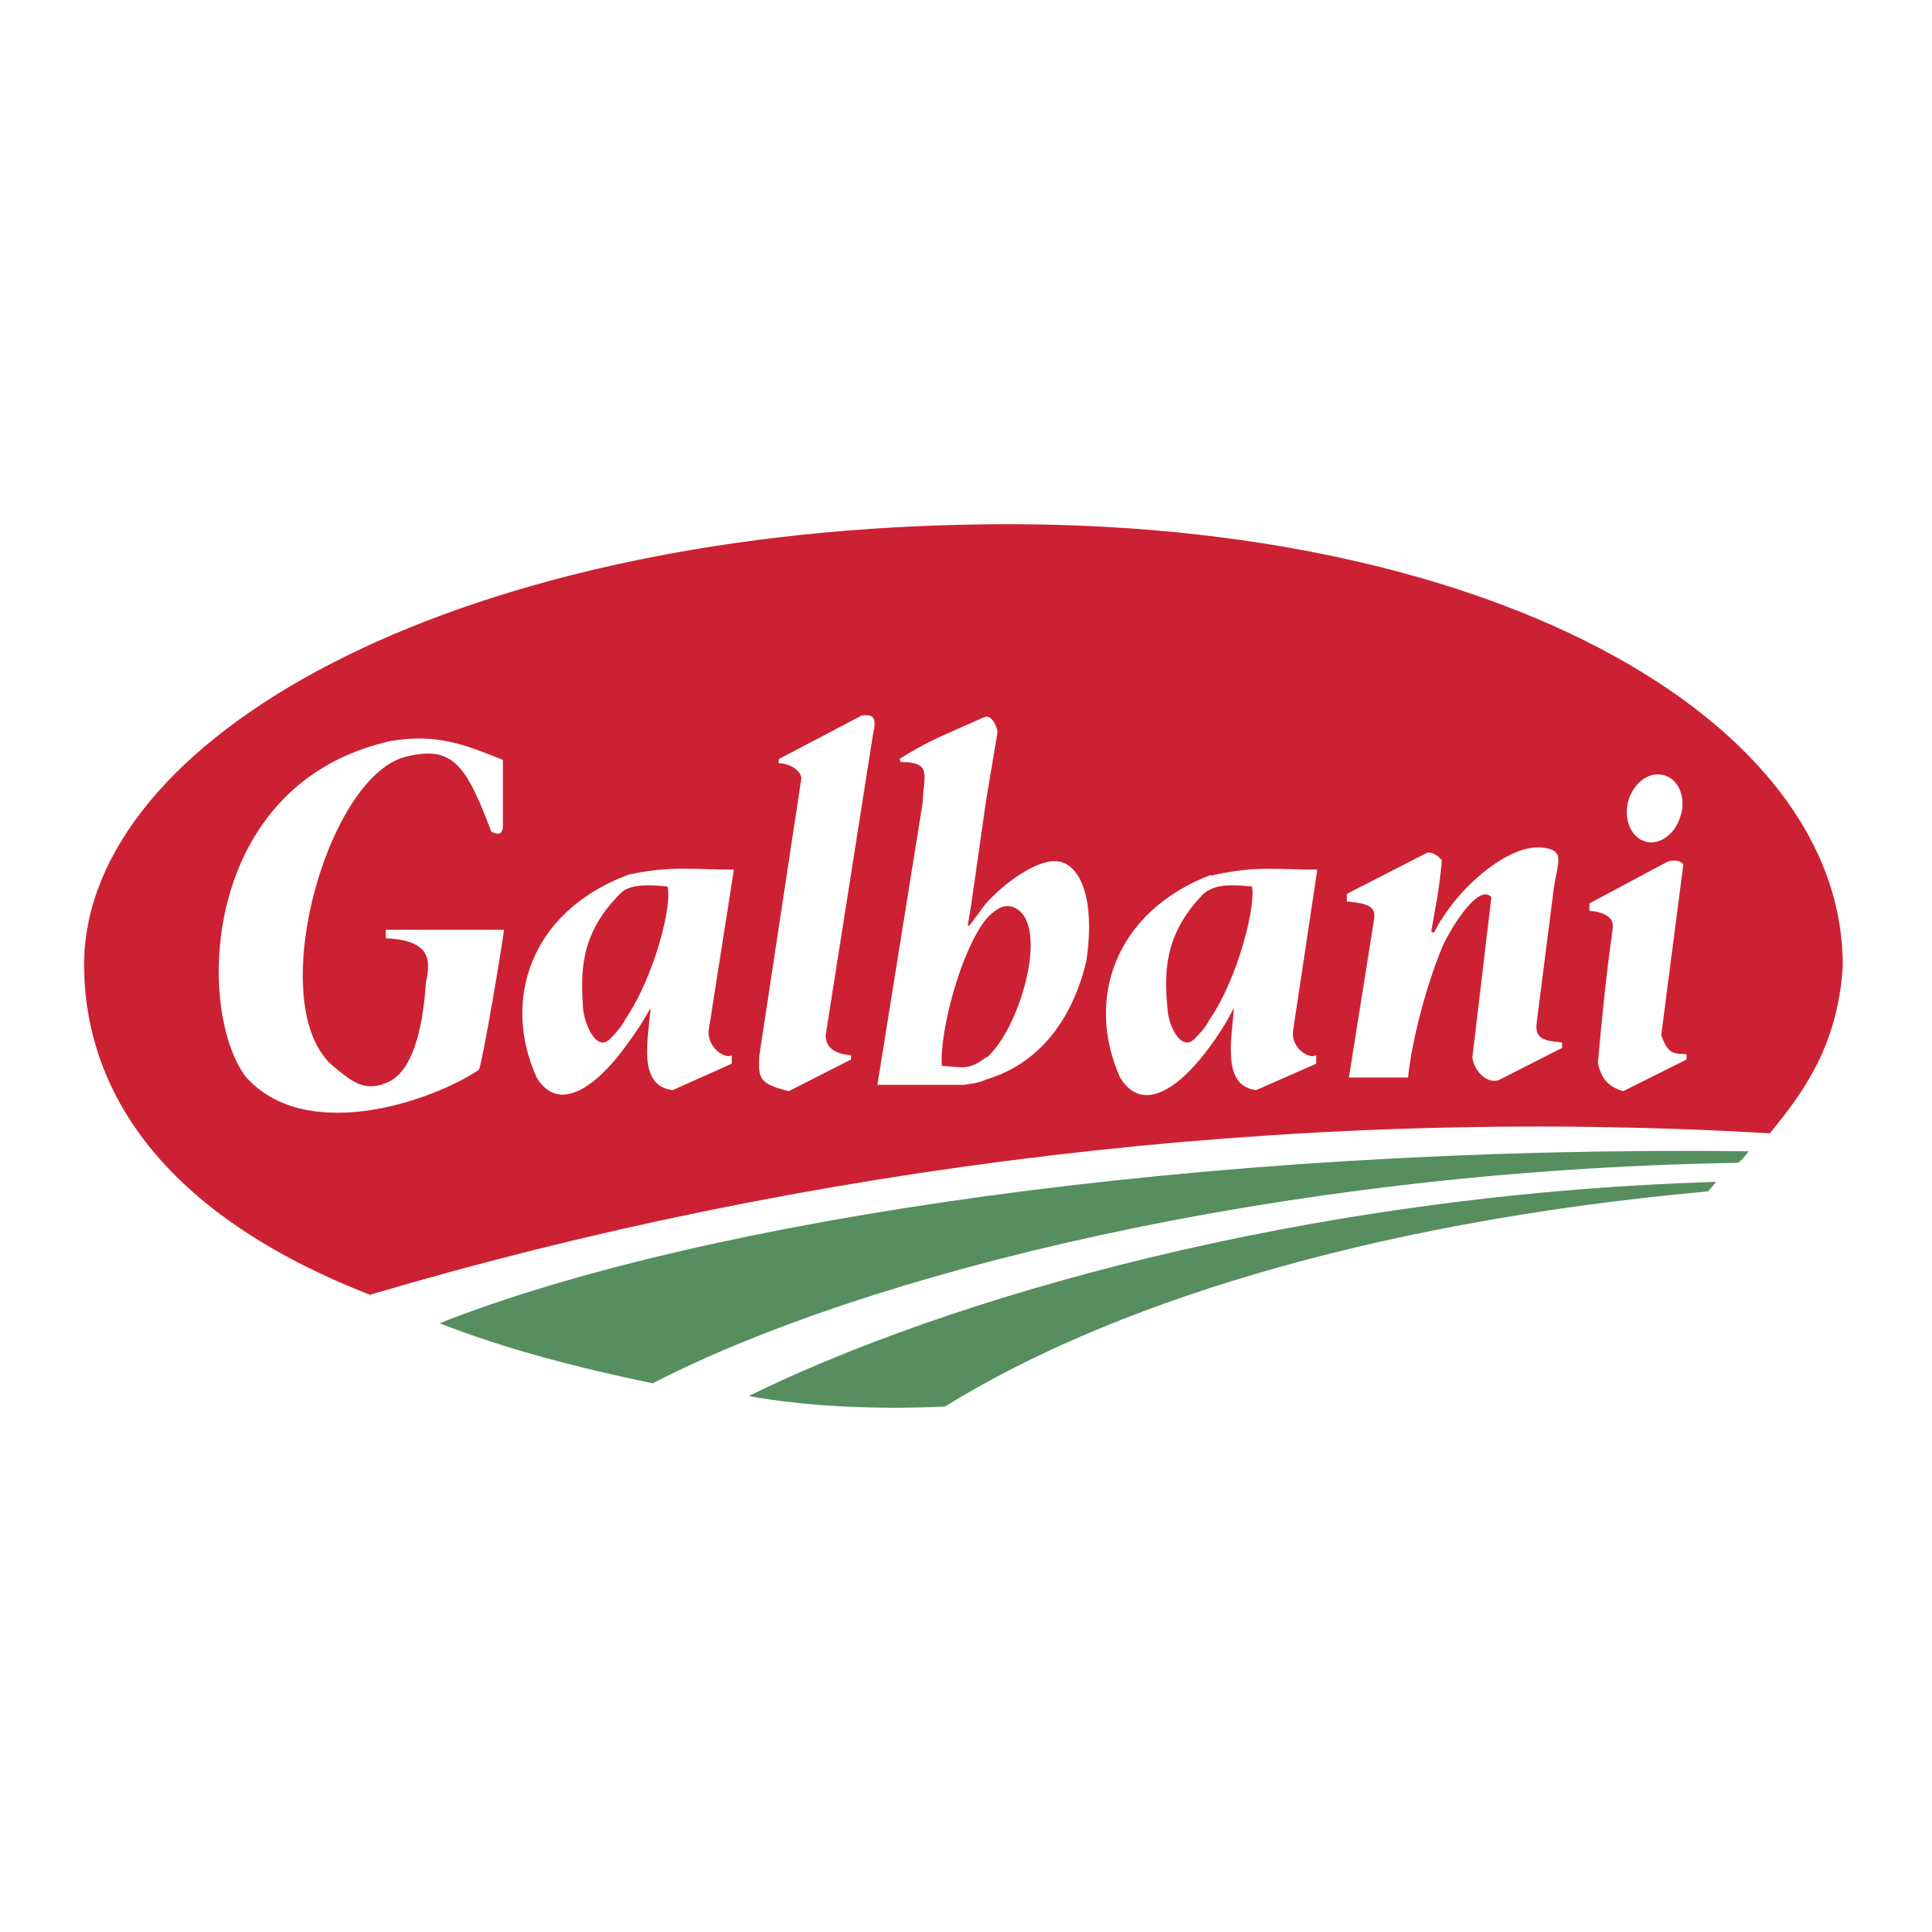 Galbani_logo.png